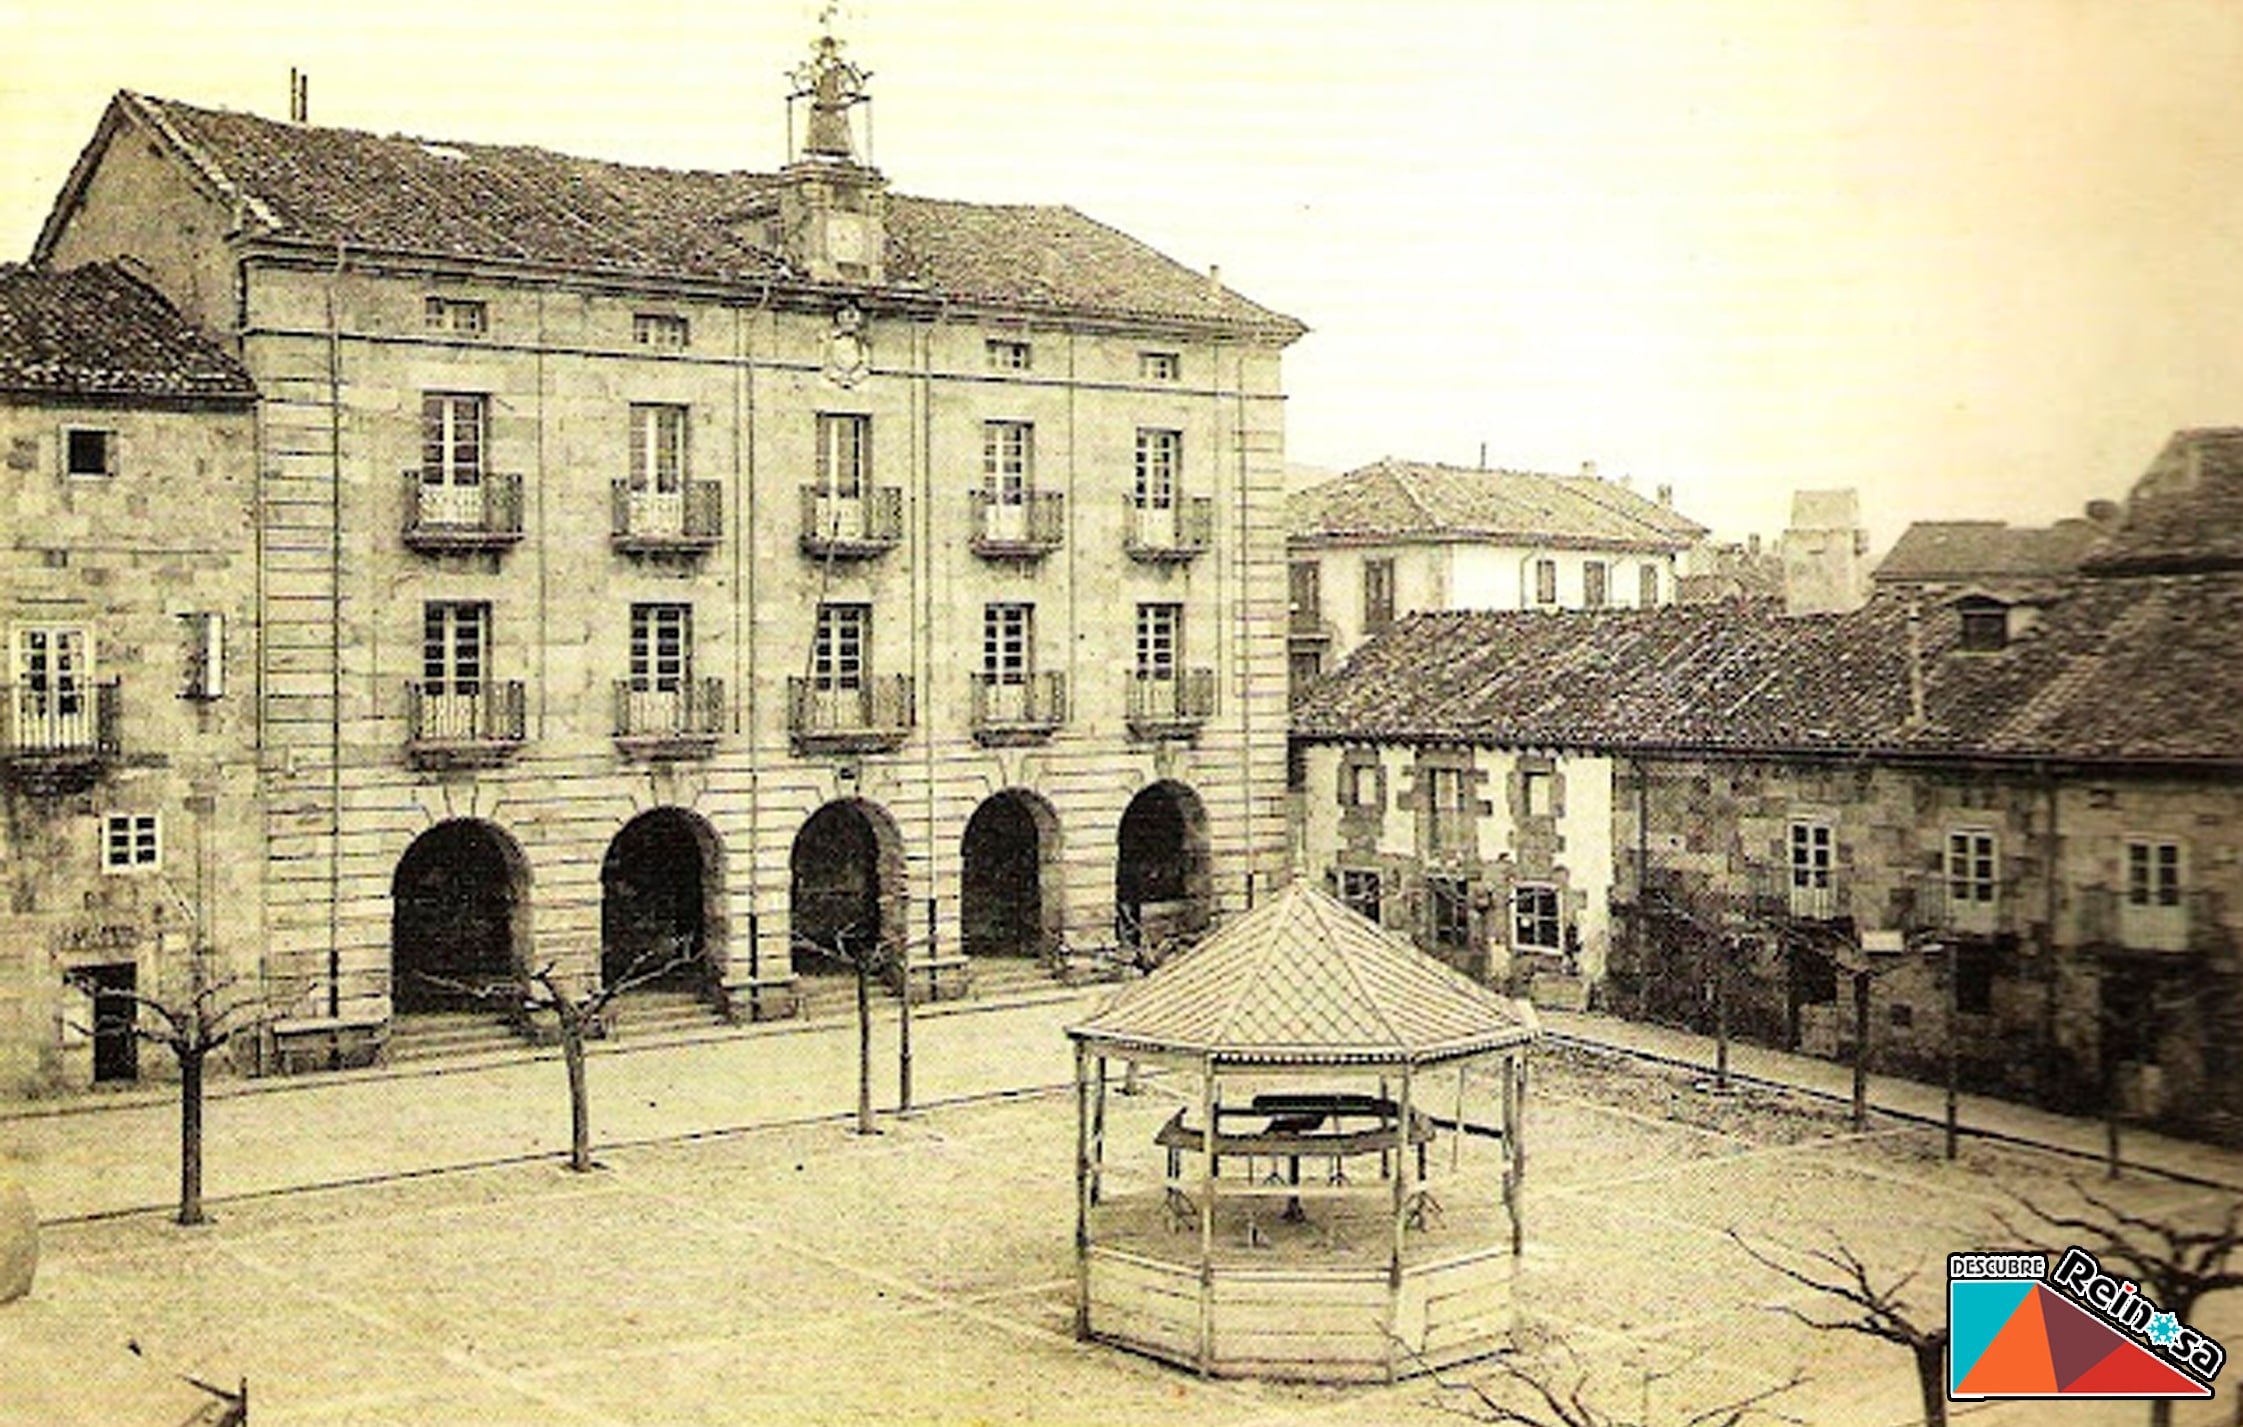 Plaza del Ayuntamiento concurrida